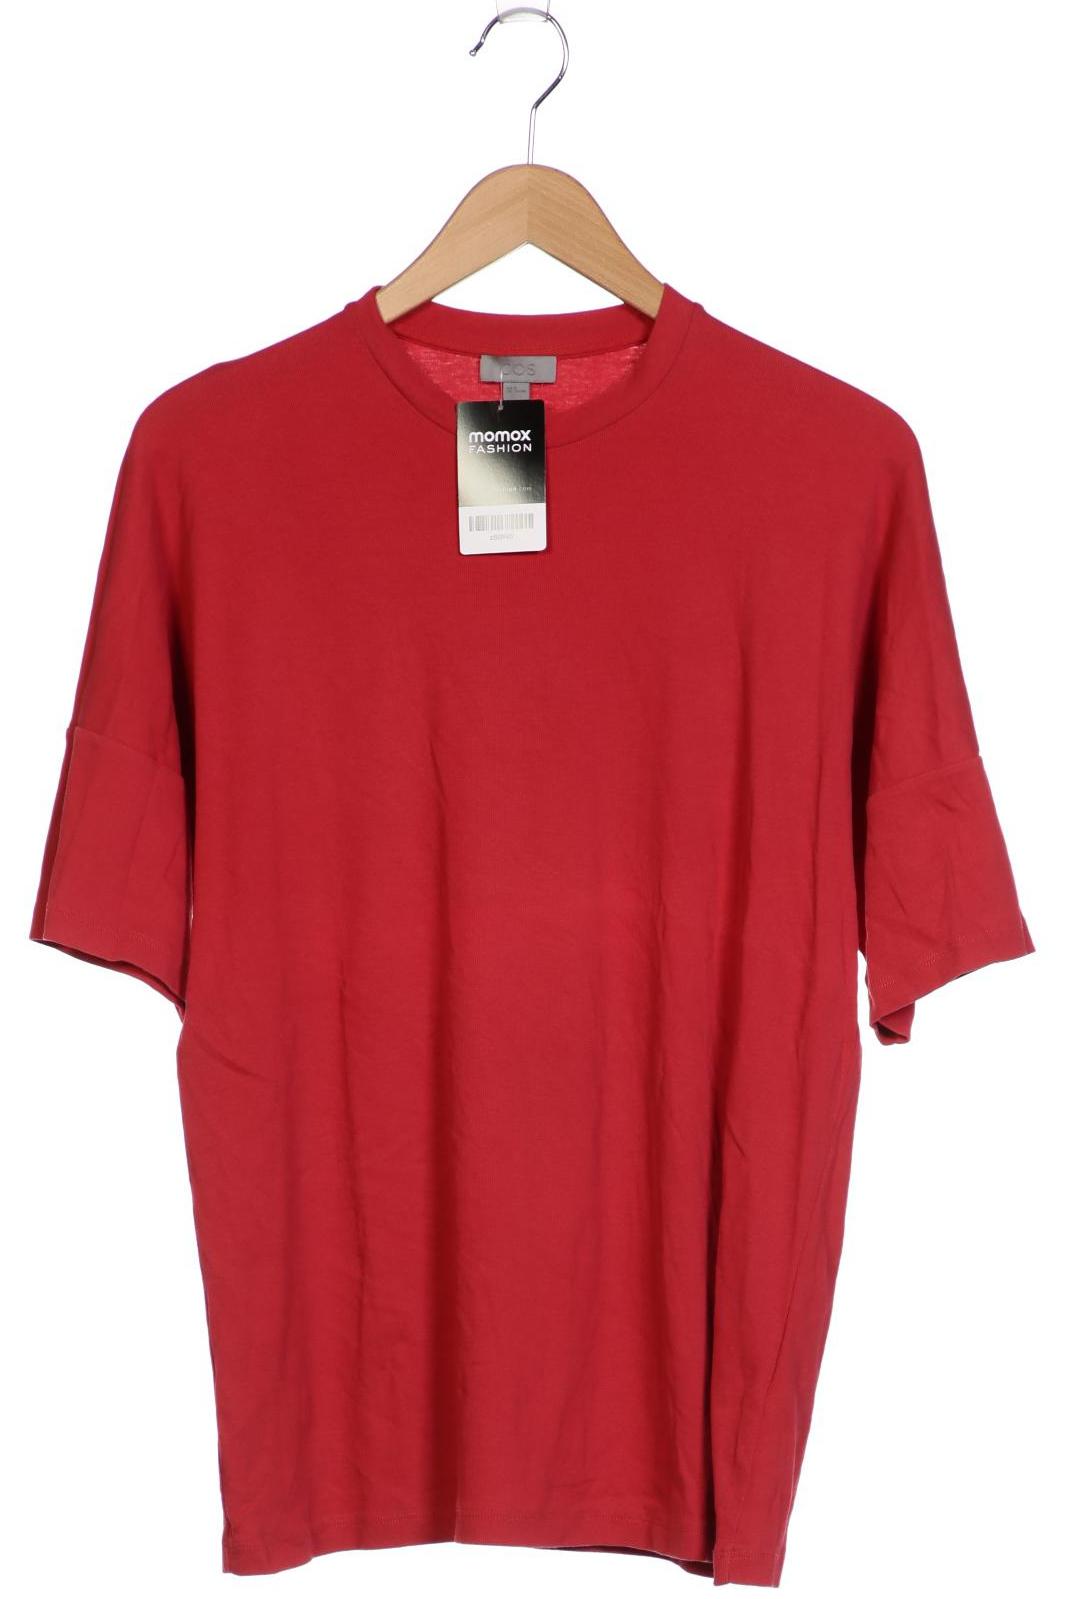 COS Herren T-Shirt, rot, Gr. 48 von COS